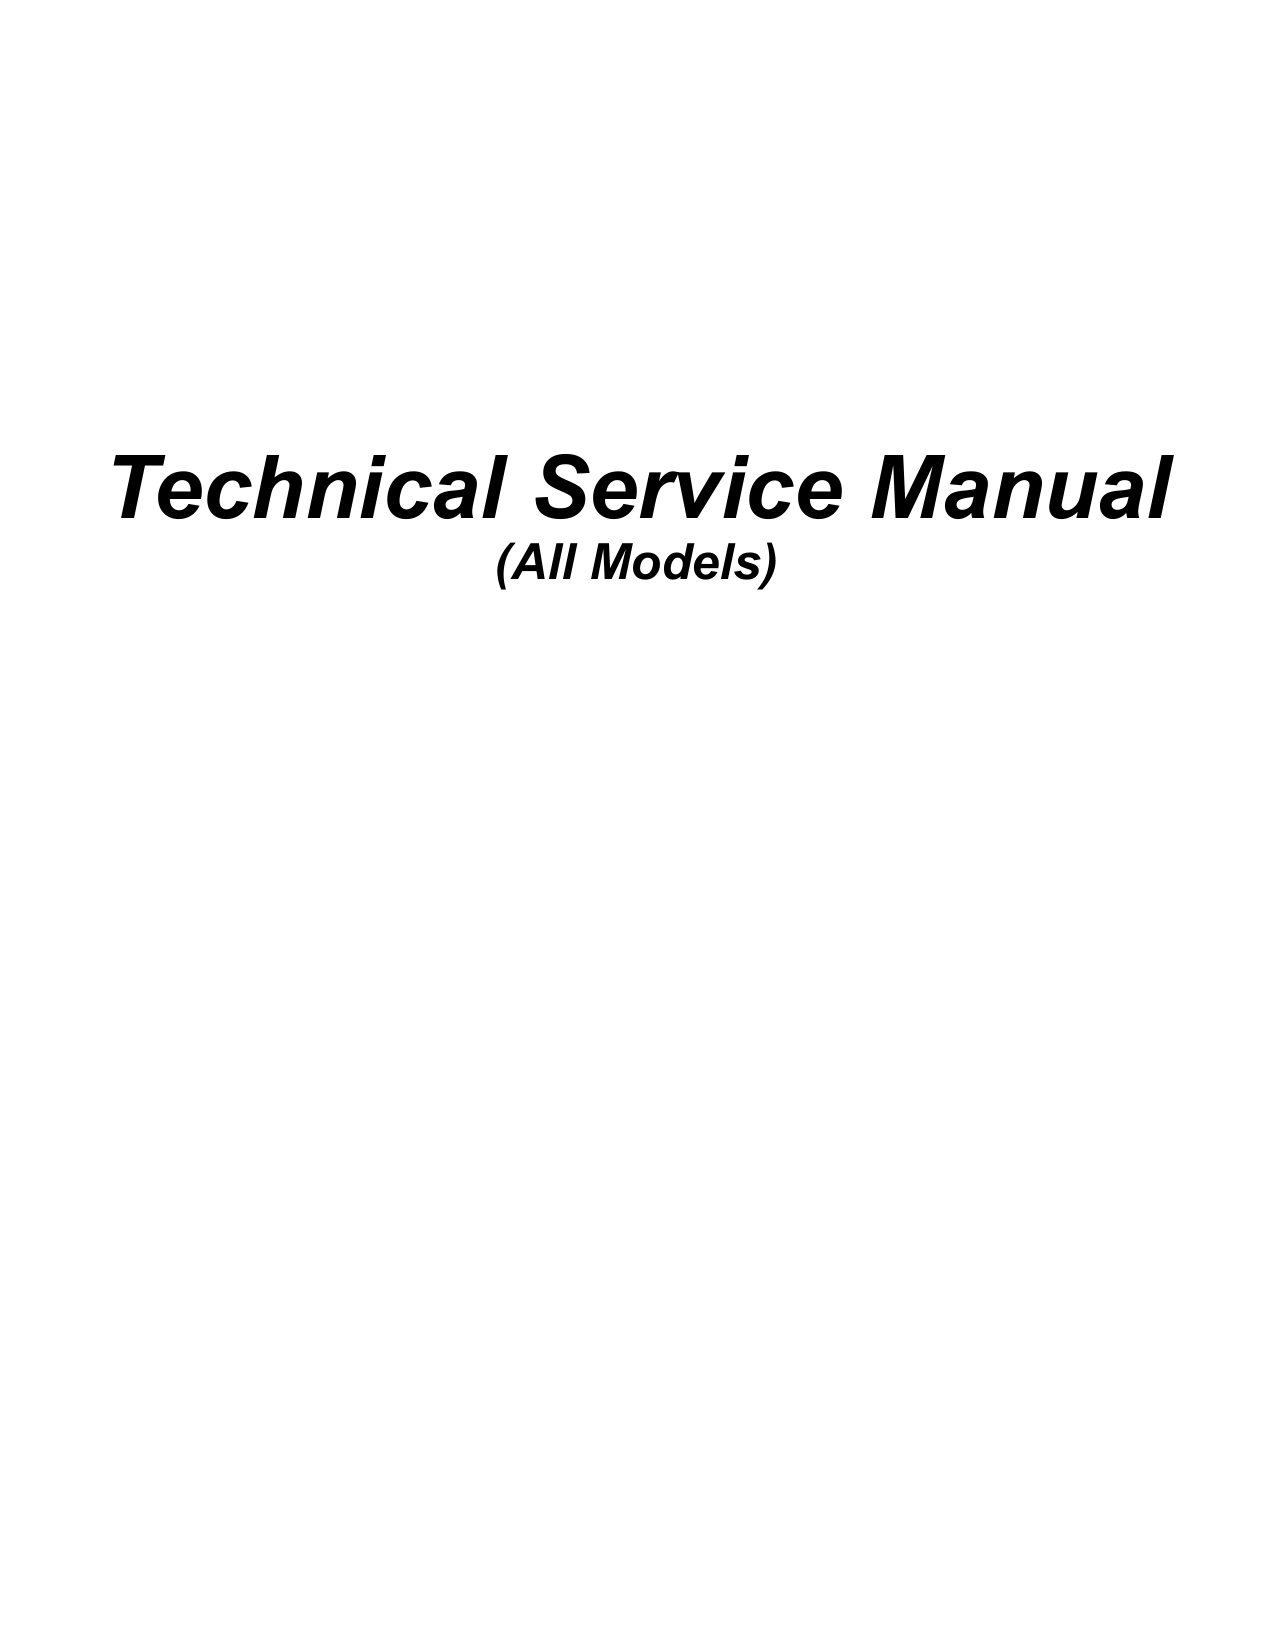 pdf for True Refrigerator GDM-23FC manual